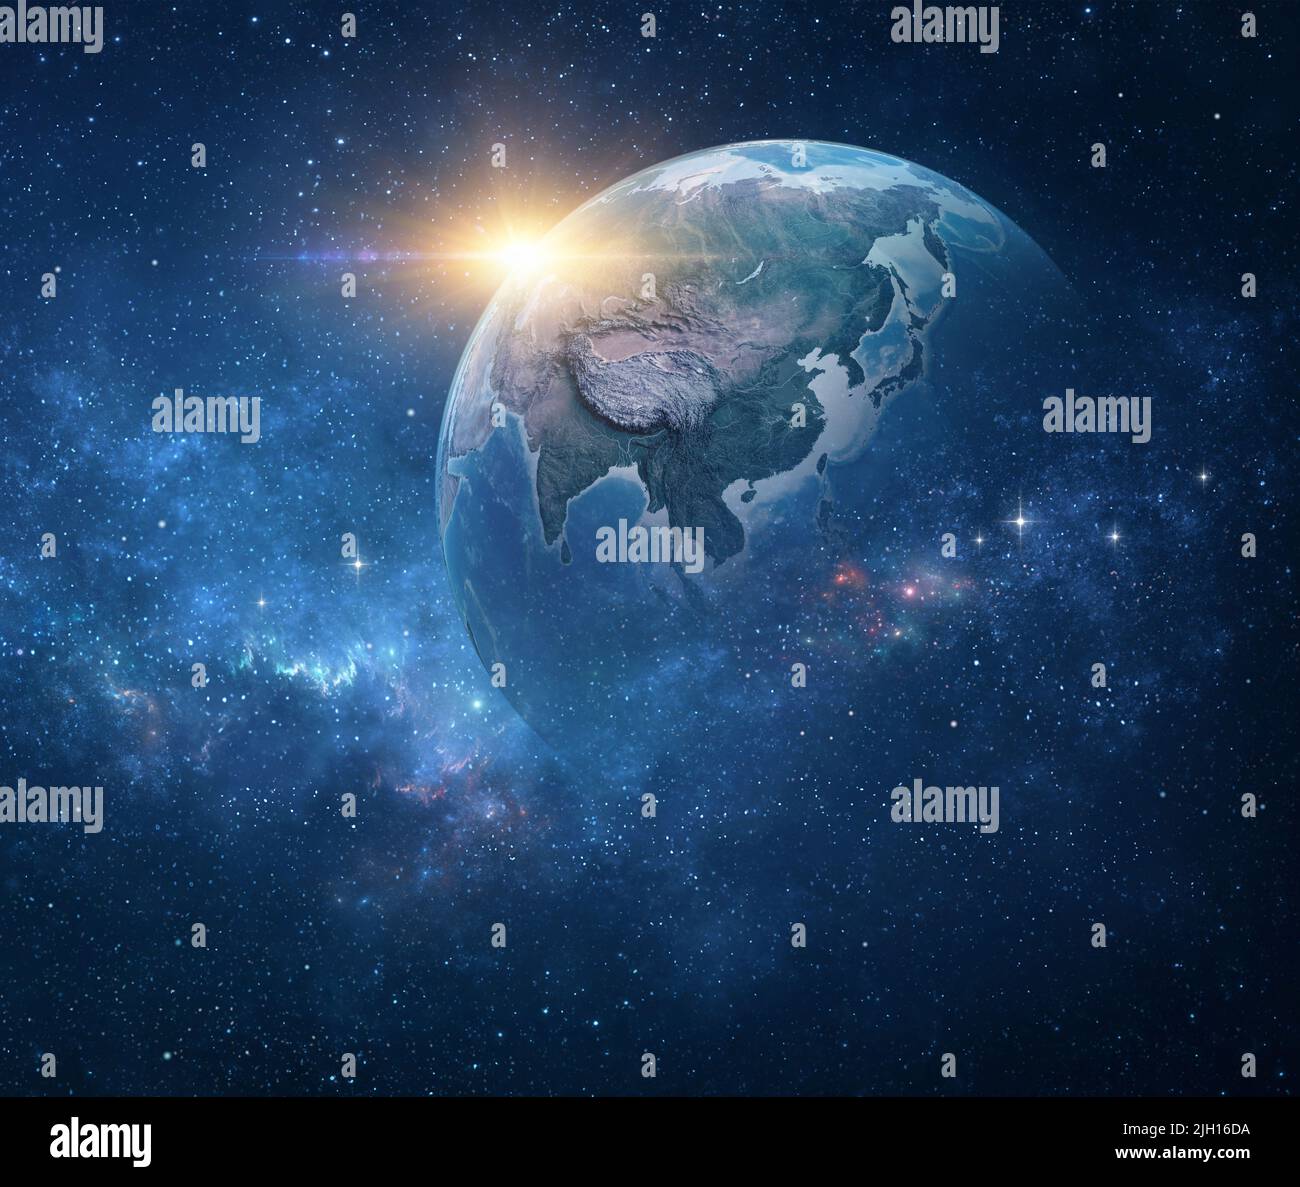 Planet Erde, aus dem All betrachtet, mit Fokus auf Ostasien. Erdglobus im tiefen Weltraum, Sterne leuchten und die Sonne geht am Horizont auf - NASA-Elemente Stockfoto